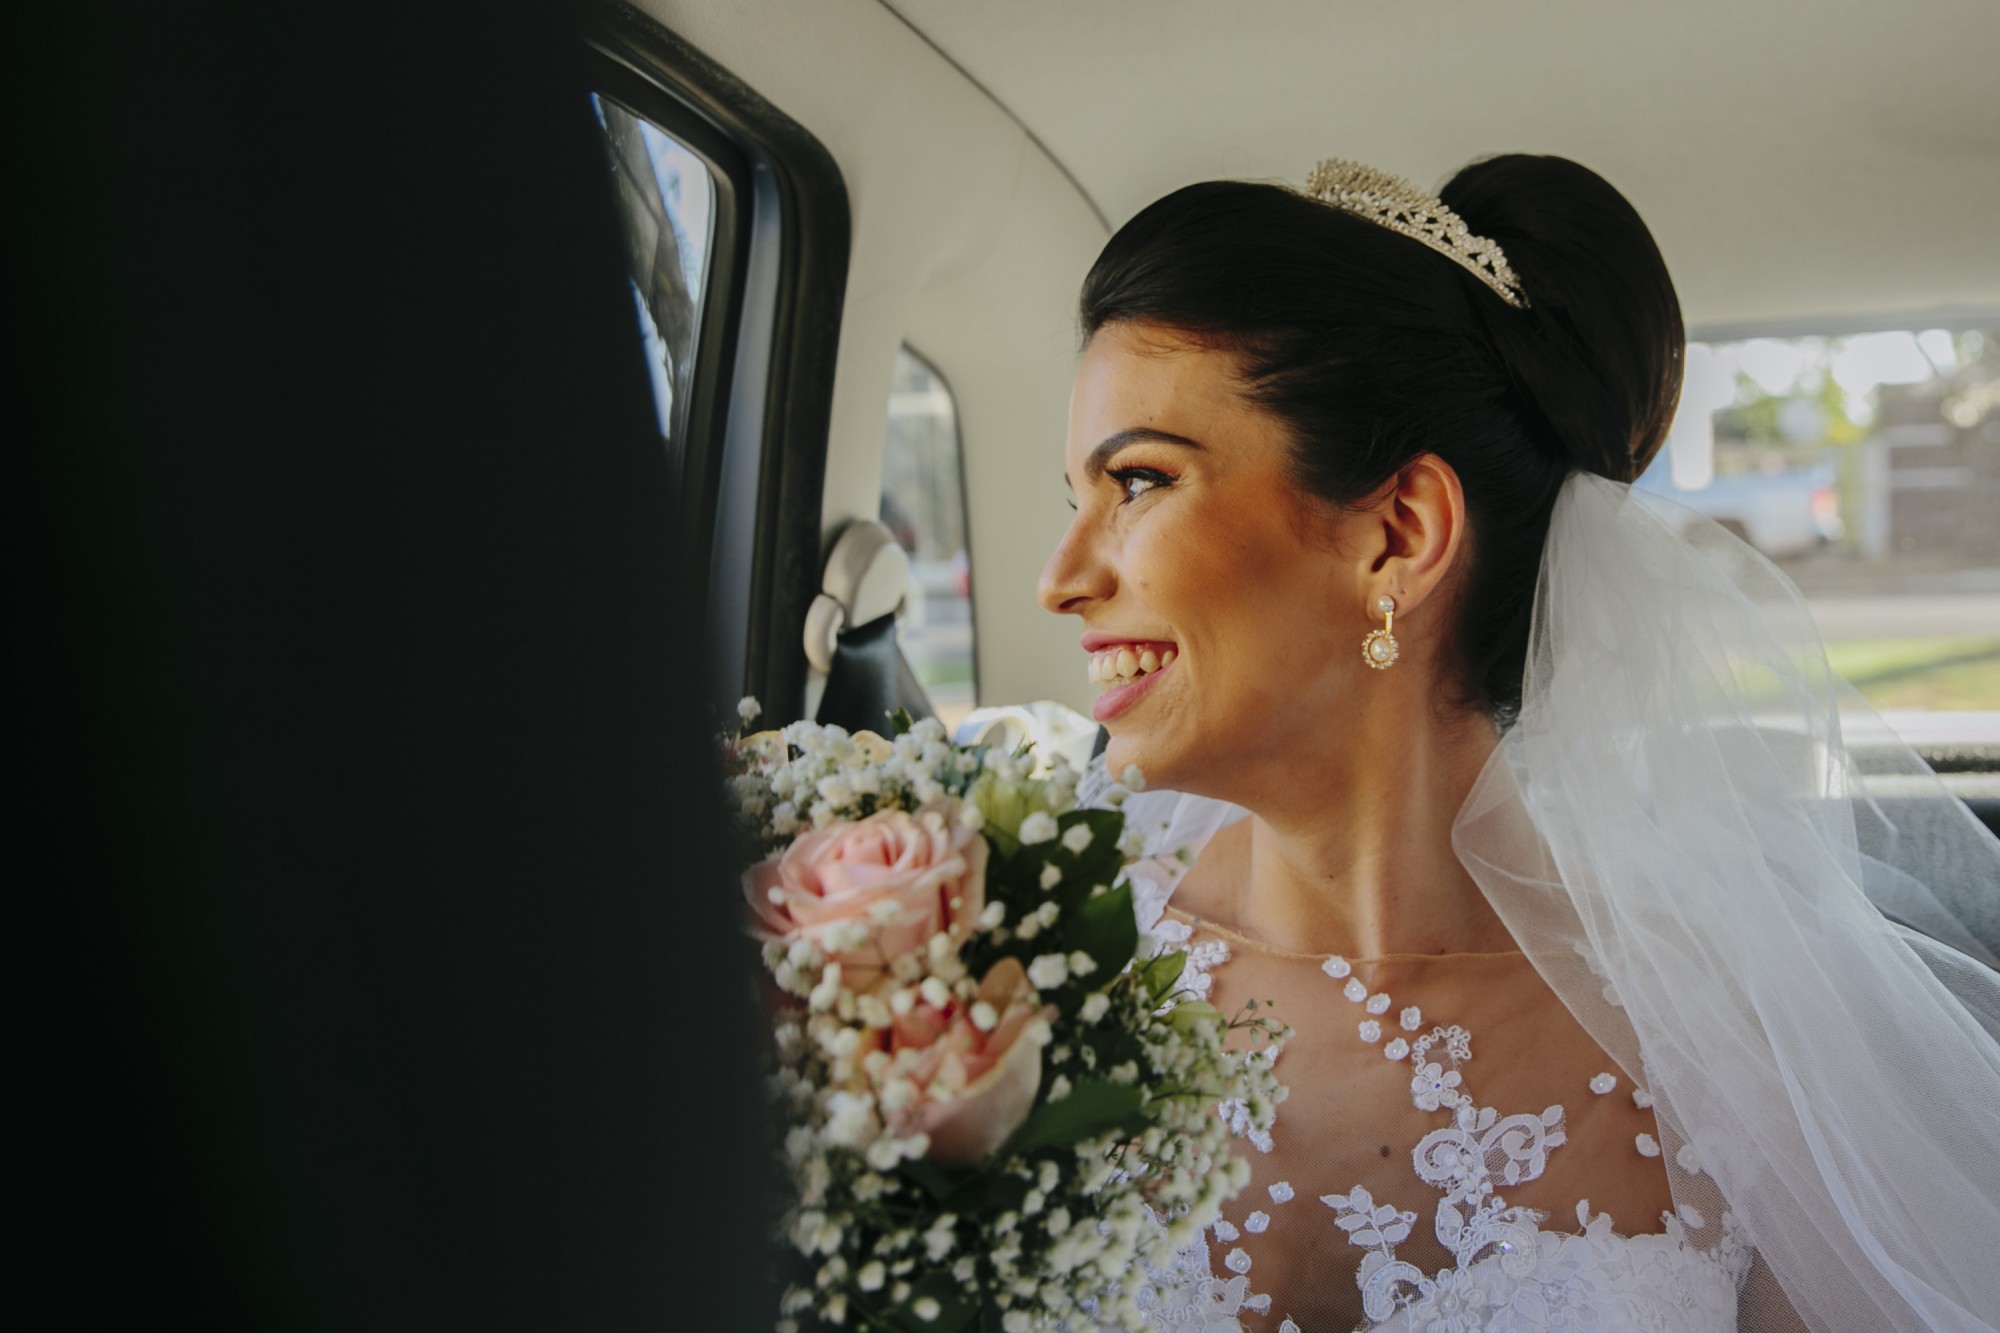 Casamento Camila Rampim e Rafael em Terra Roxa - Paraná - por Lorran Souza e Léia Sotile - fotografos de casamentos - 17